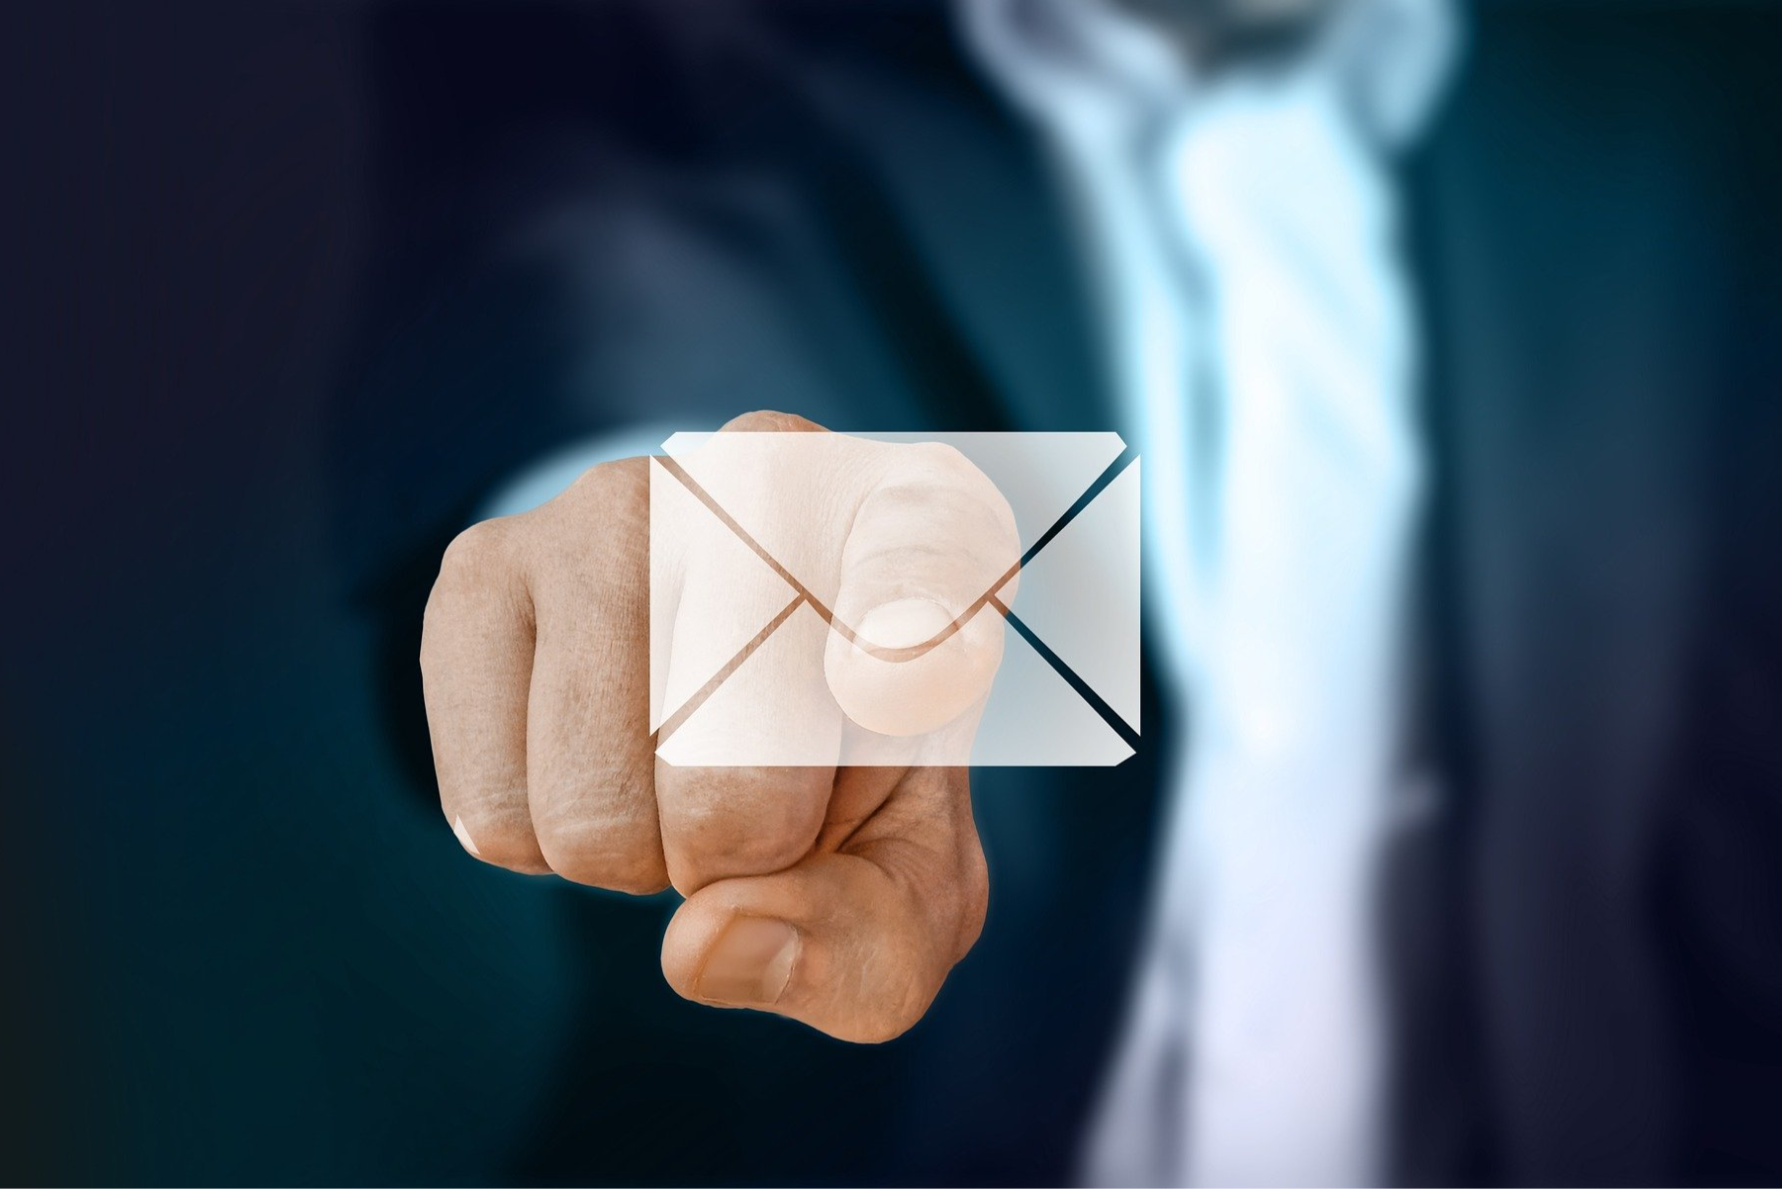 Heben Sie den E-Mail-Versand in Ihrem Unternehmen mit dem iwm RapidEmailService auf das nächste Level.